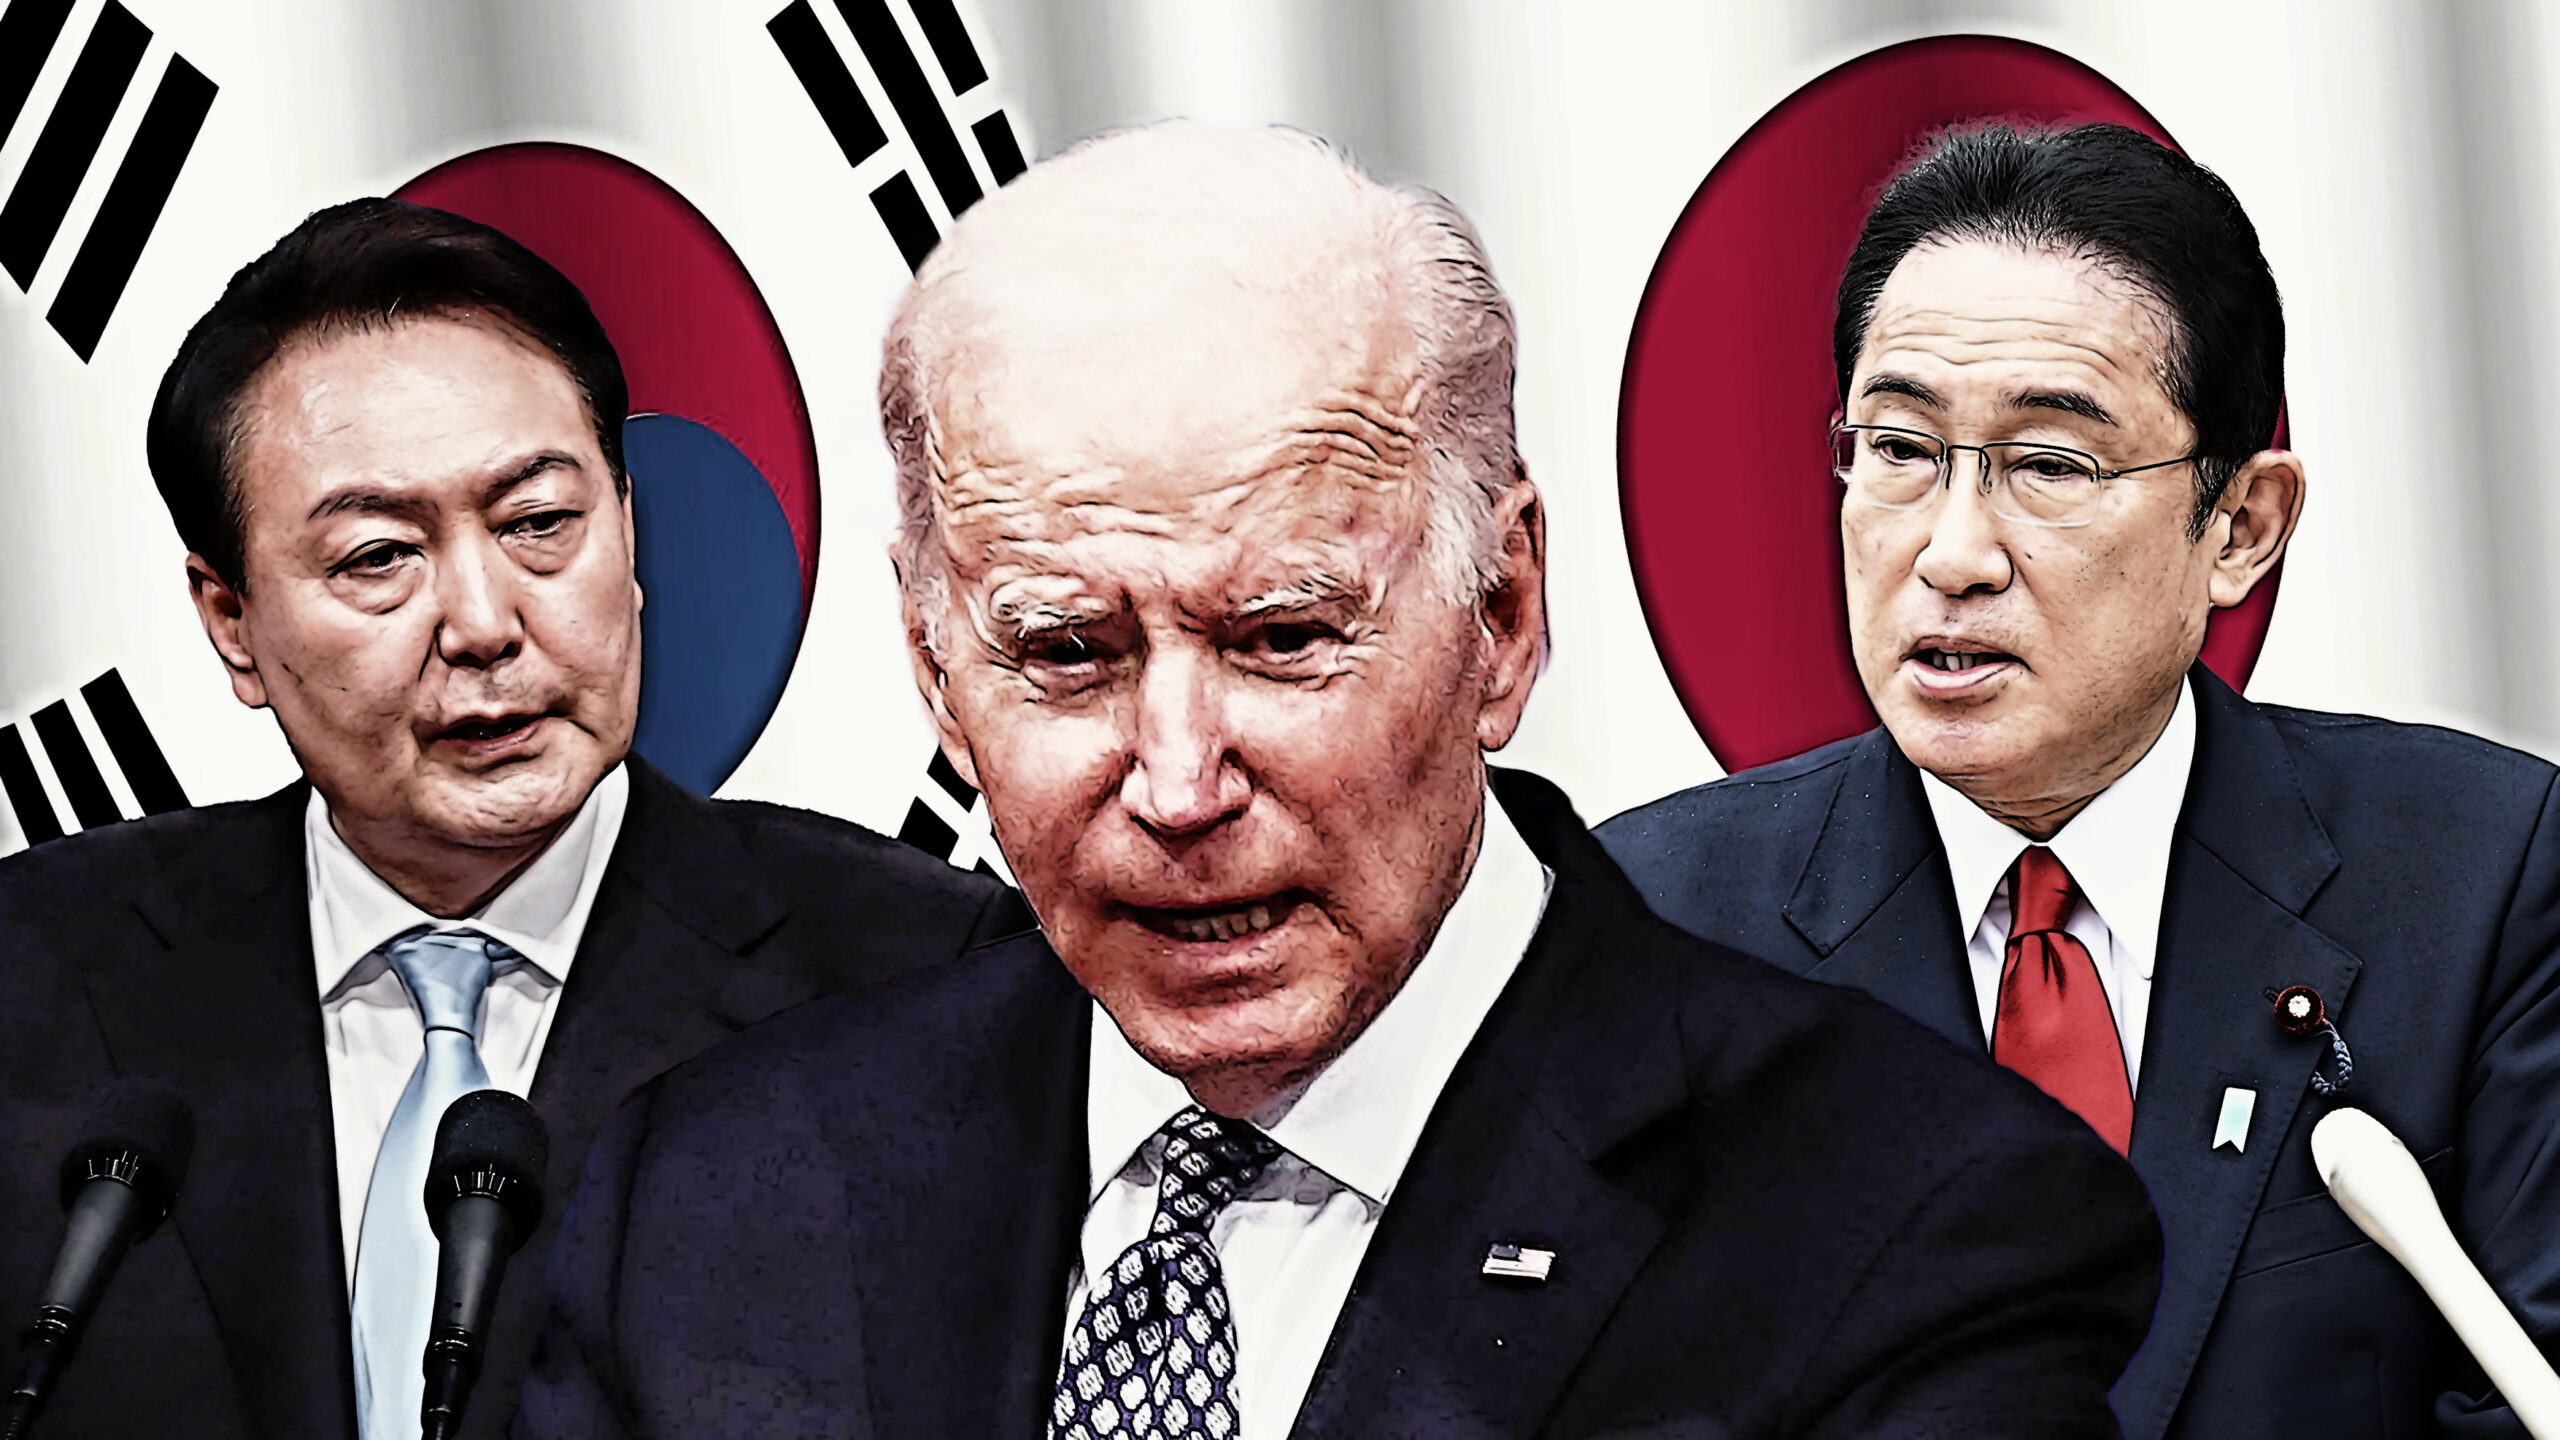 Summit Japonska, Koreje a USA: Ničivá trojstranná vojenská aliance. “Rychlostní silnice k válce mezi Východem a Západem”